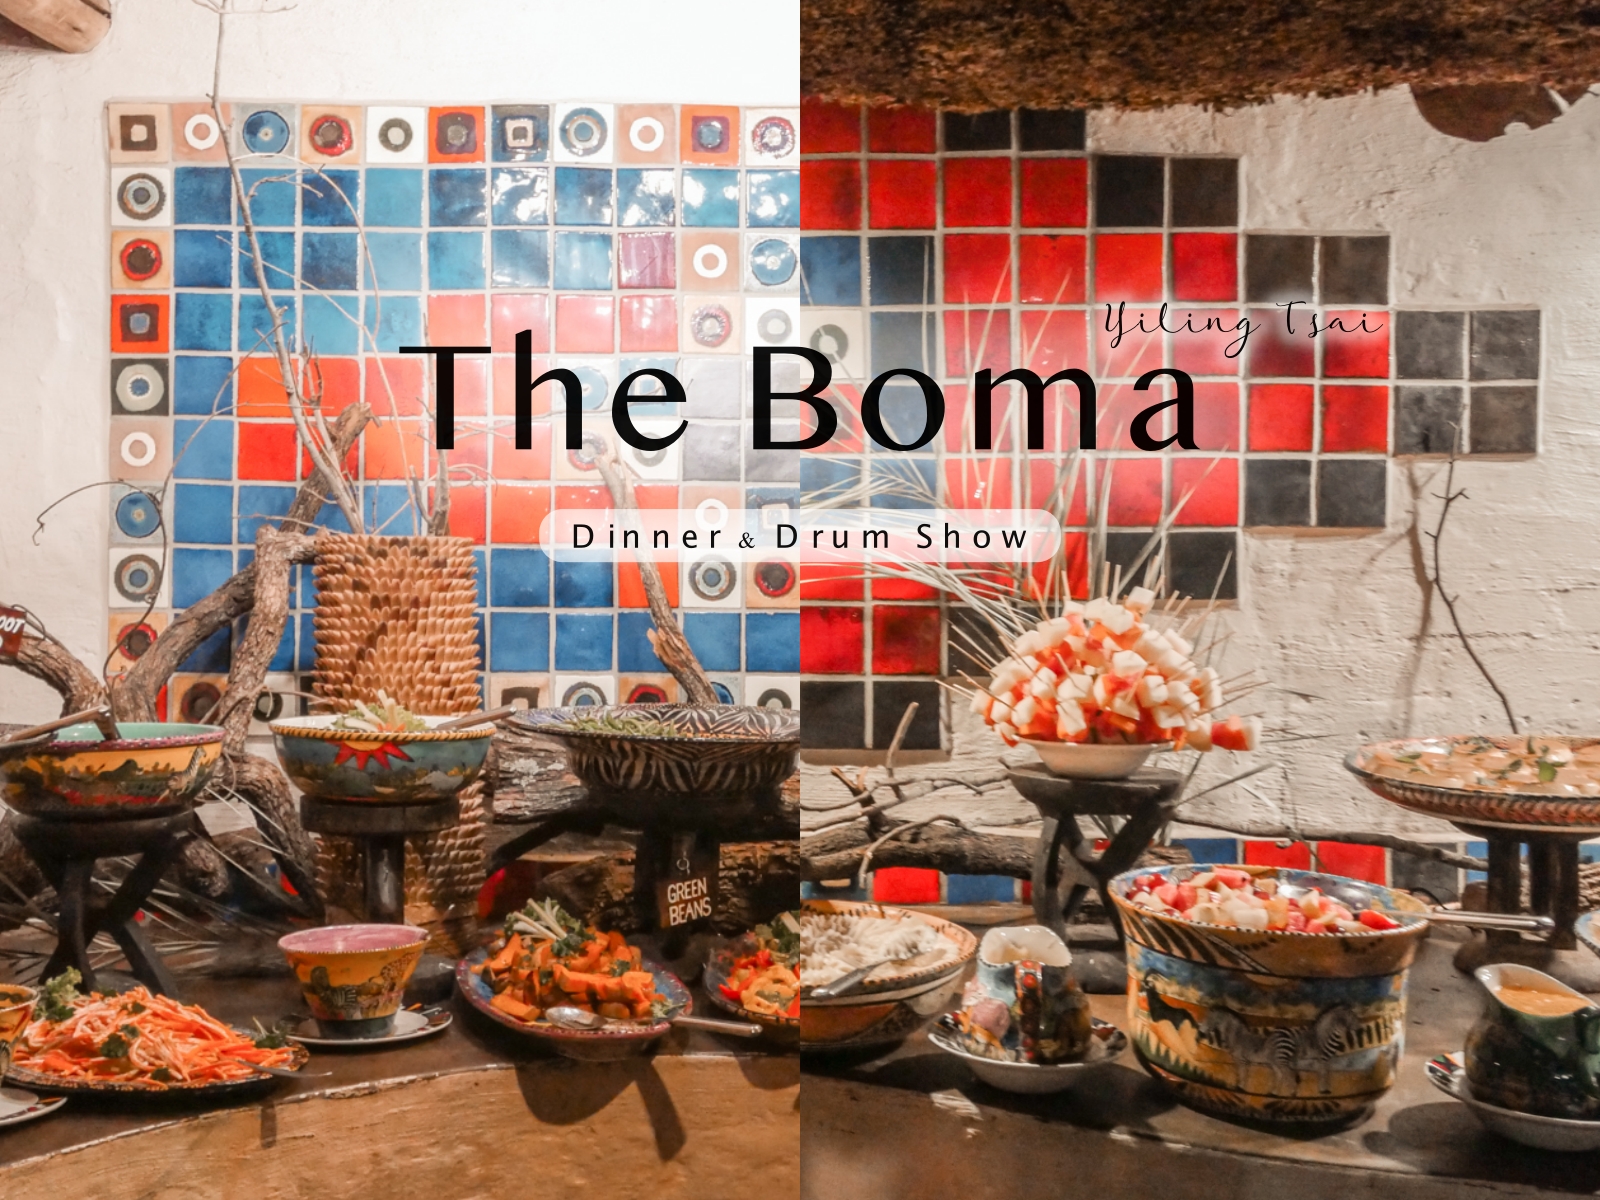 辛巴威維多利亞瀑布城美食 The Boma Dinner & Drum Show 當地最熱門的風味自助餐體驗